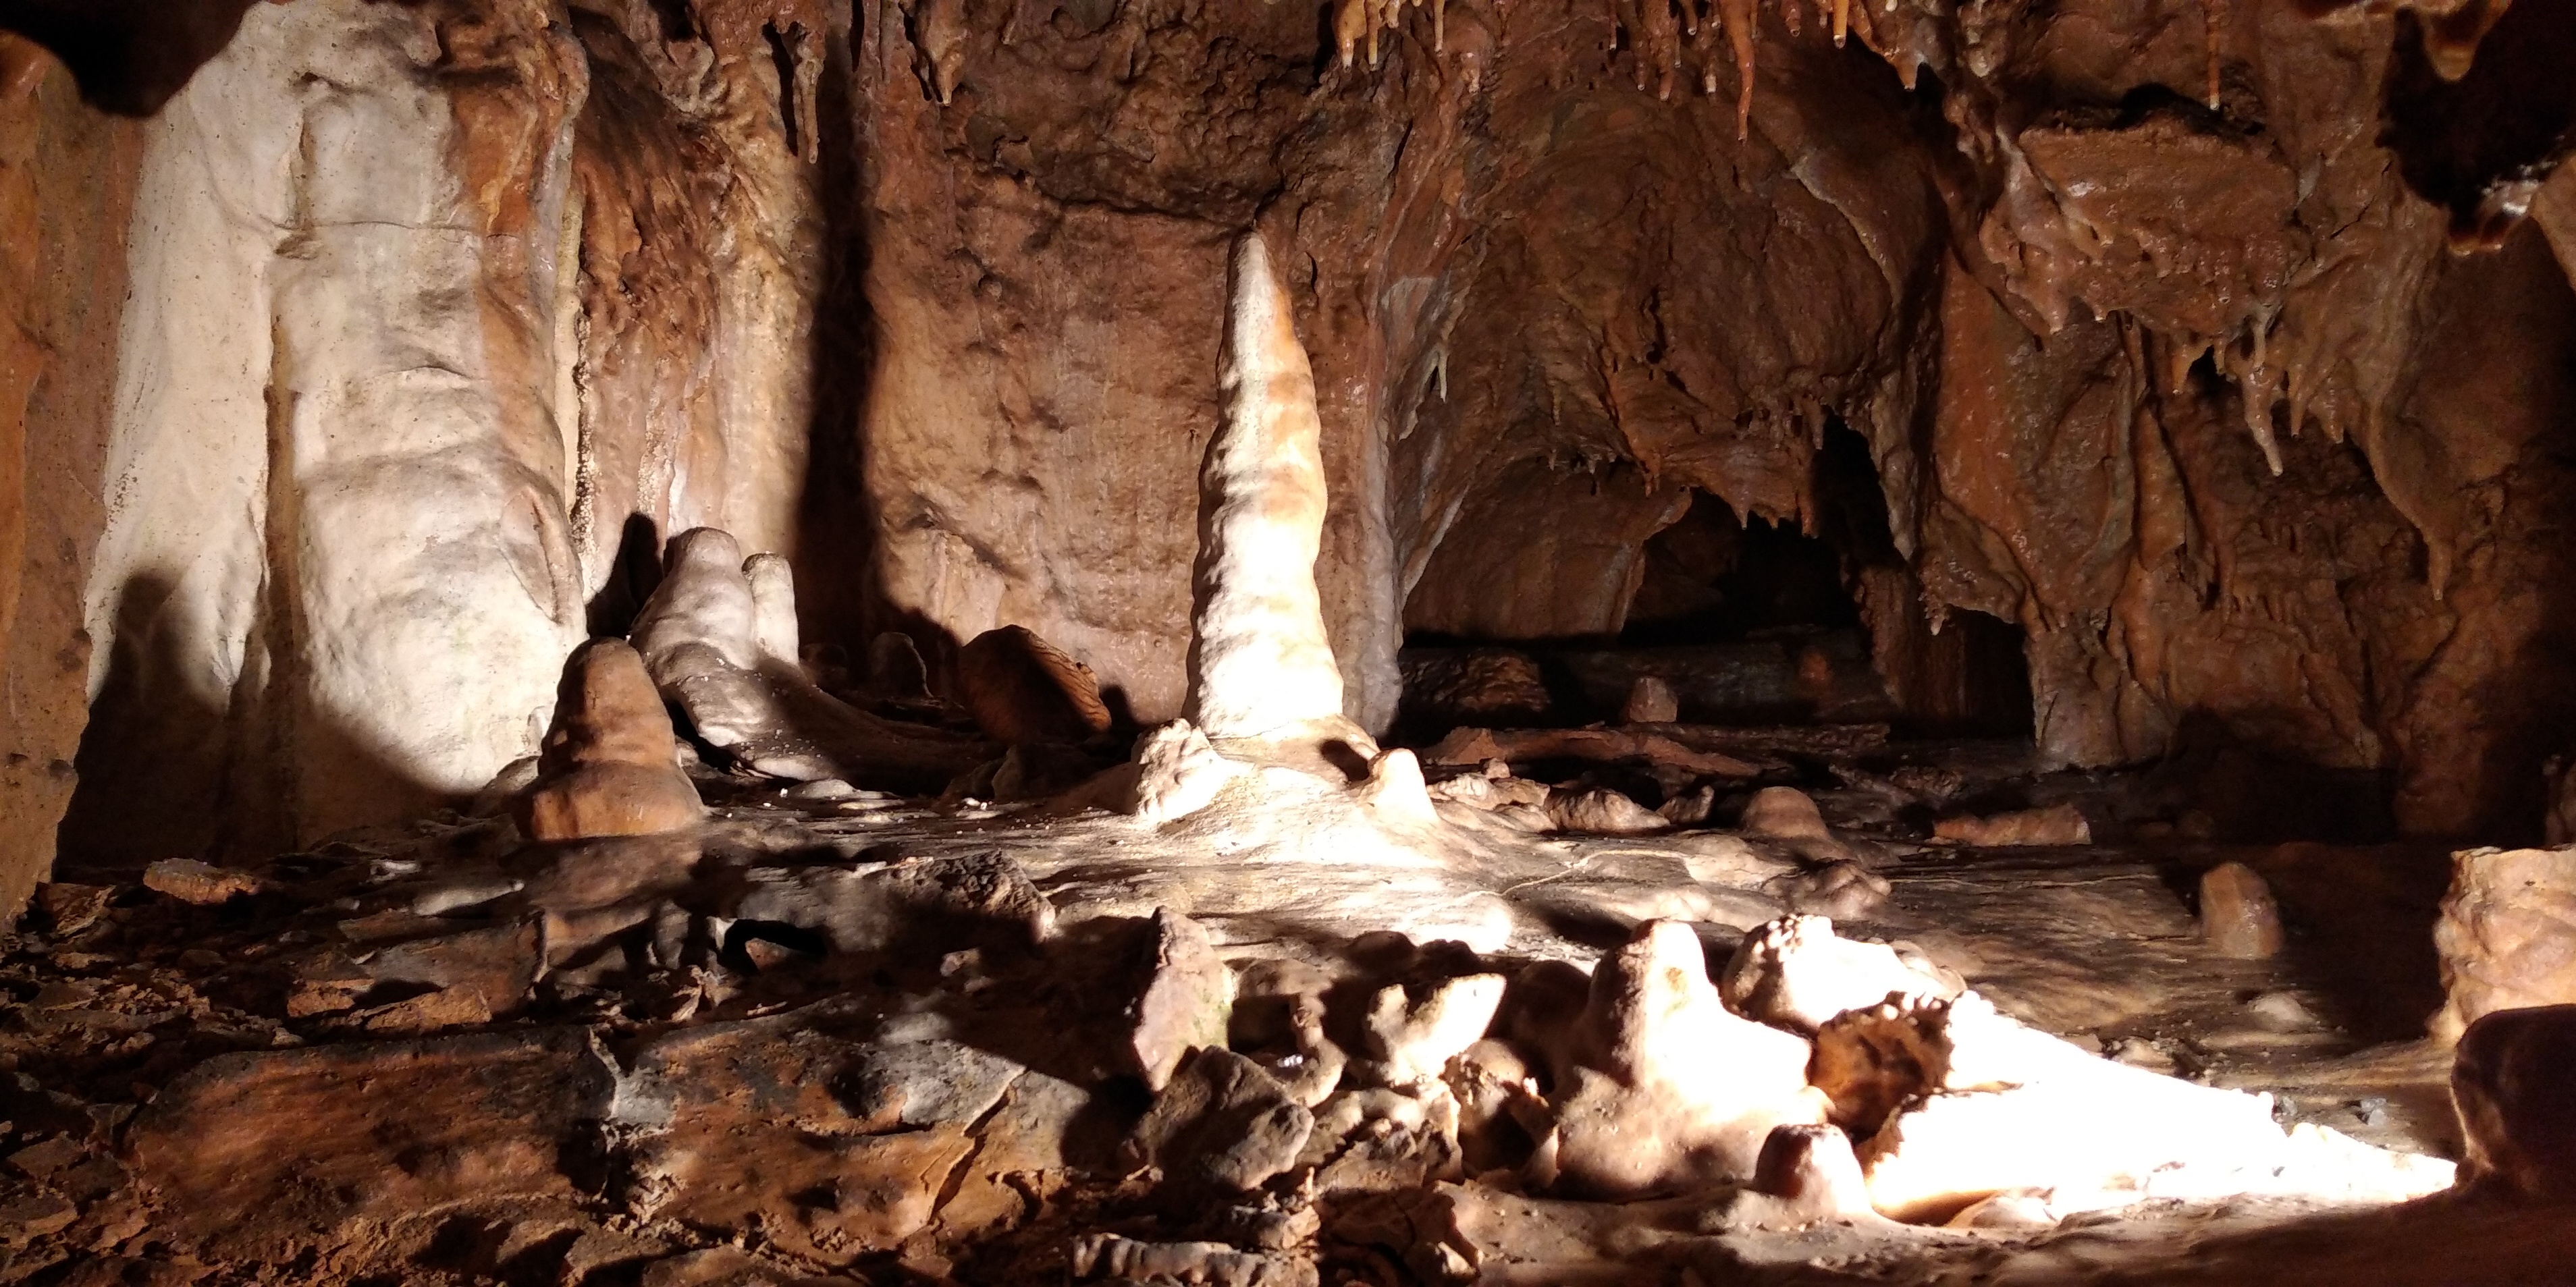 Moravský kras uvnitř jeskyně.